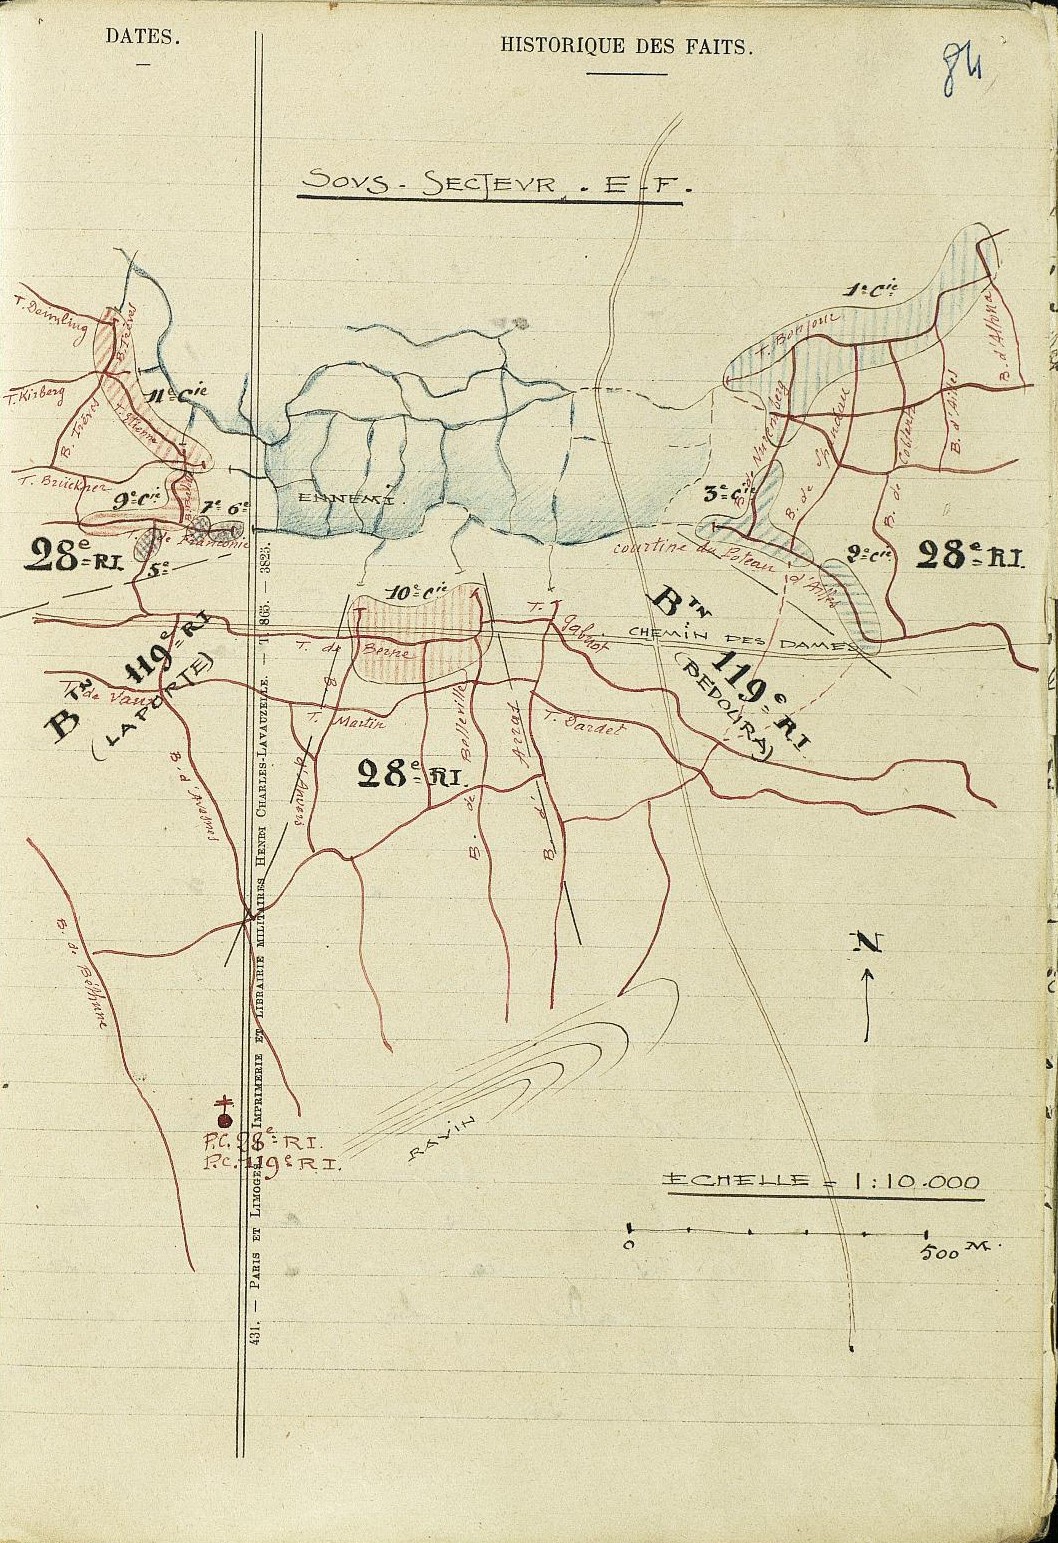 Position du 28e RI début juillet 1917 - secteur d'Ailles